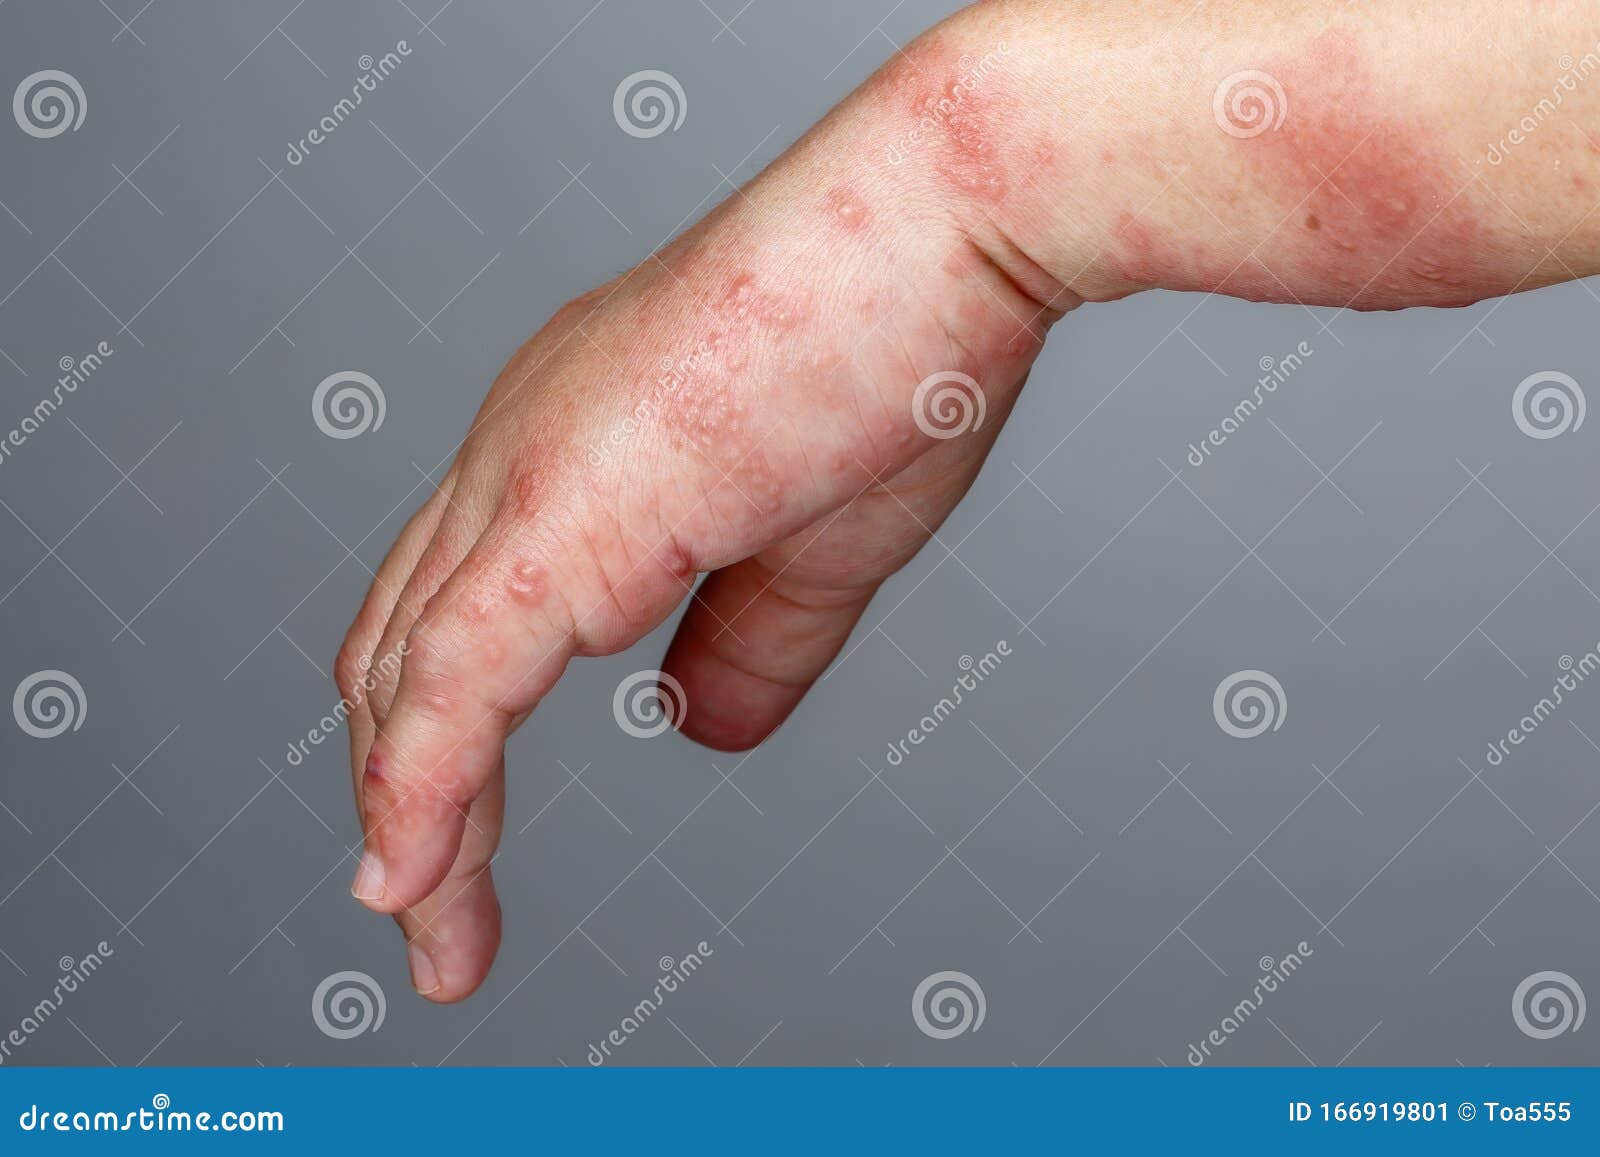 Kleinkind herpes am arm